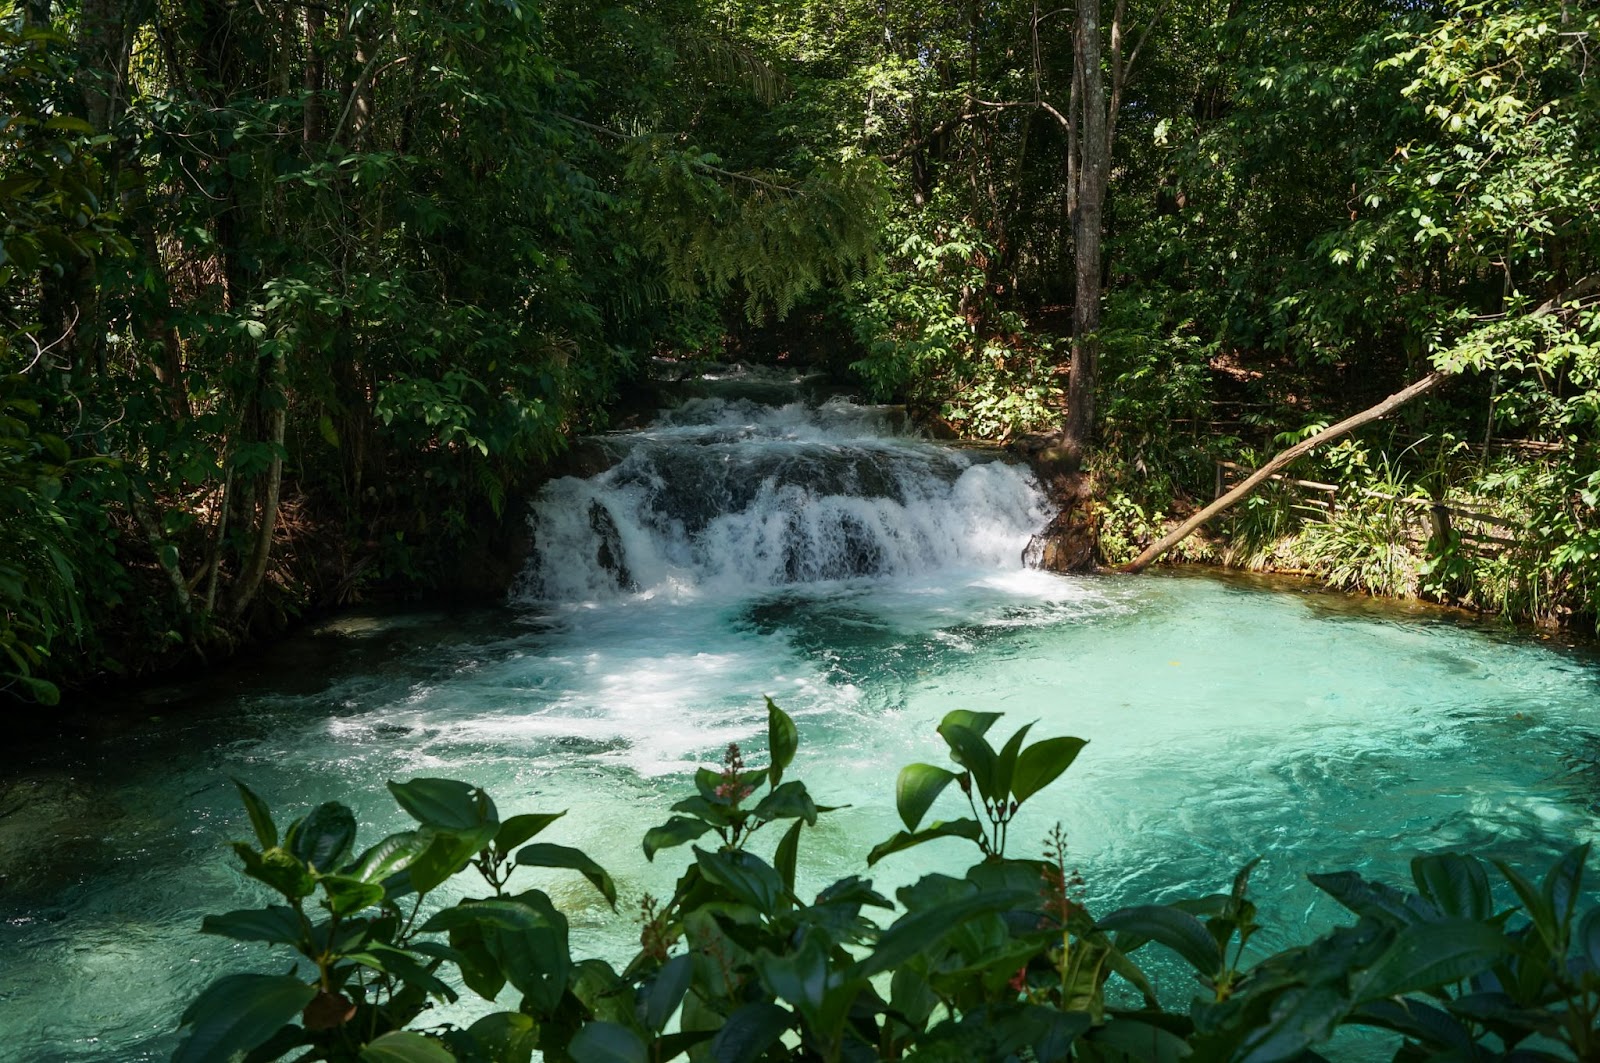 Cachoeira do Formiga no Jalapão. Queda d’água pequena, mas com alto fluxo de água cristalina. Poço de água azulado cercado pela vegetação.